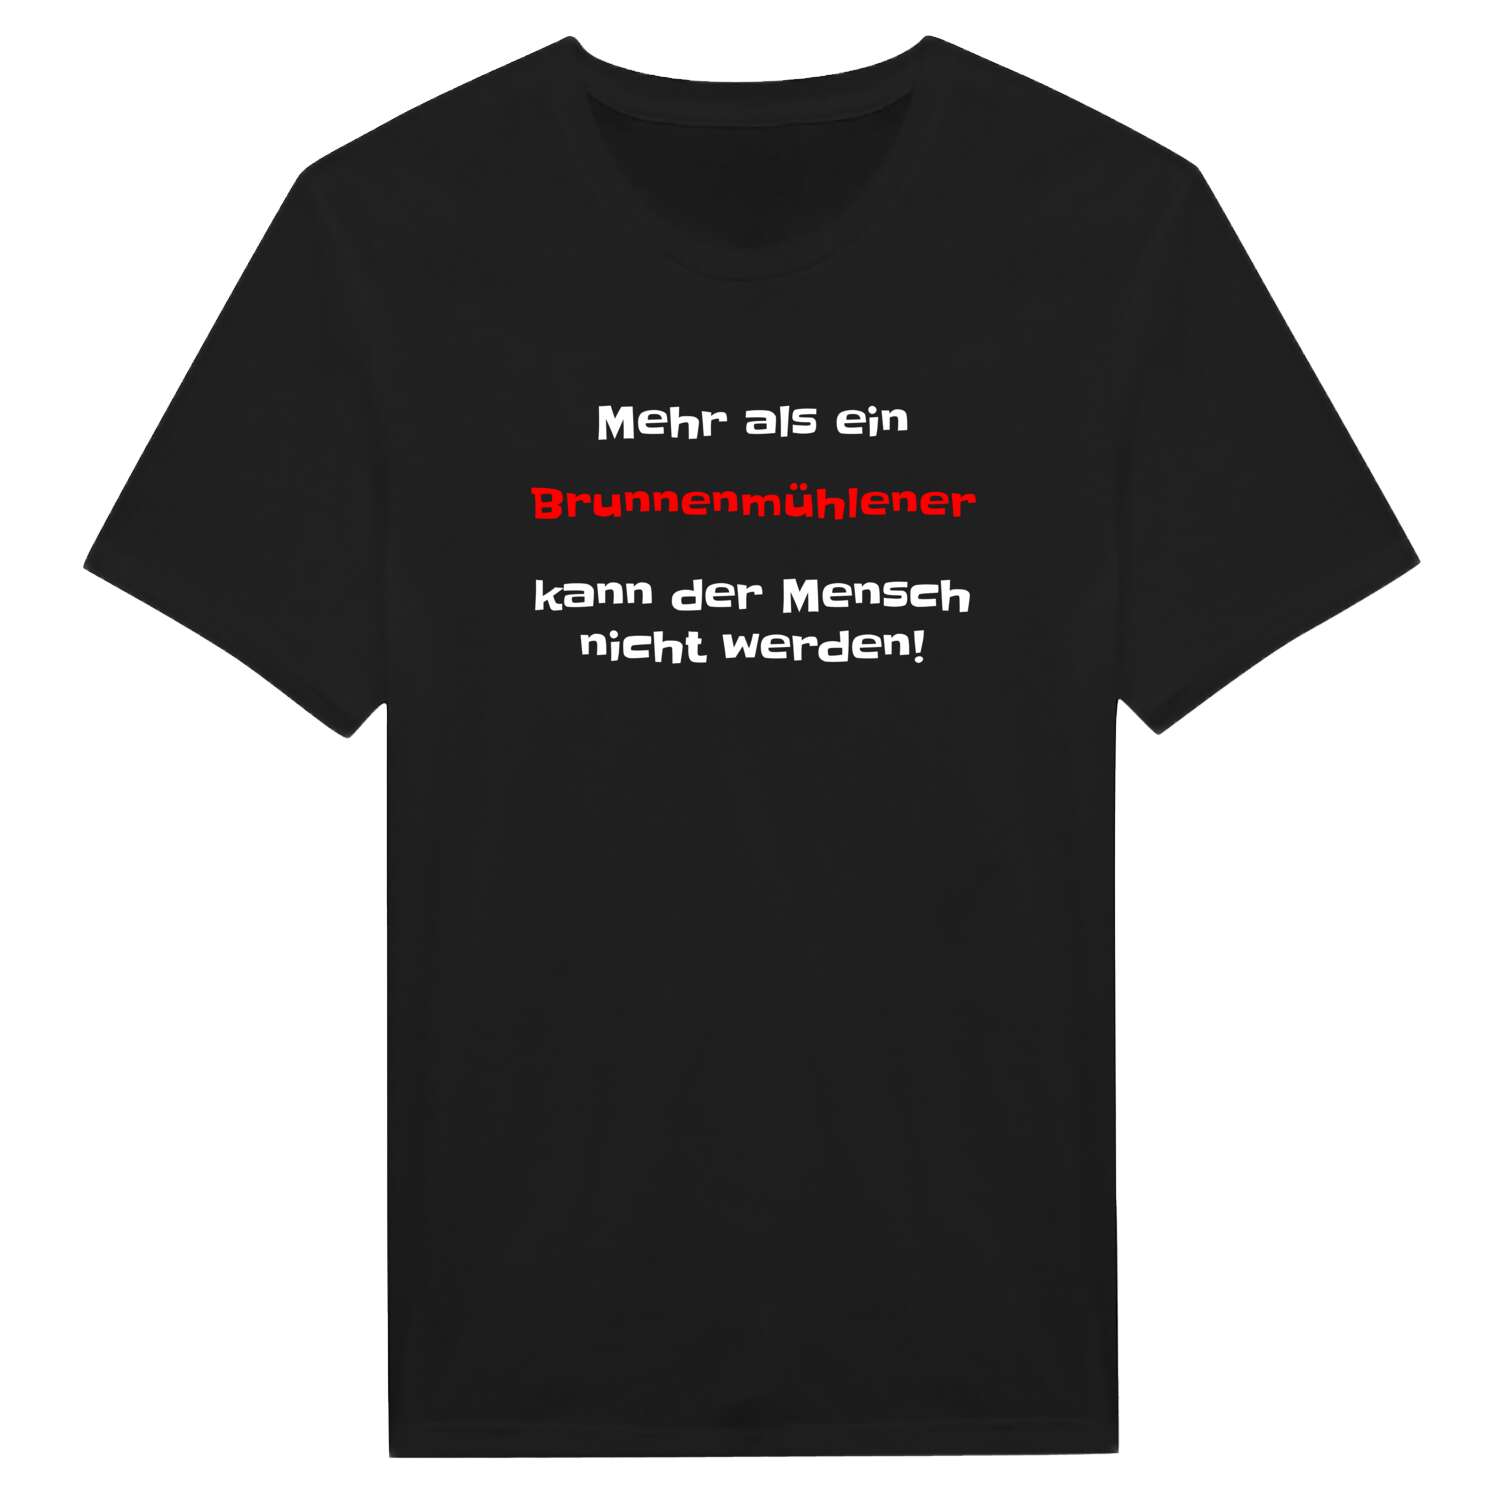 Brunnenmühle T-Shirt »Mehr als ein«